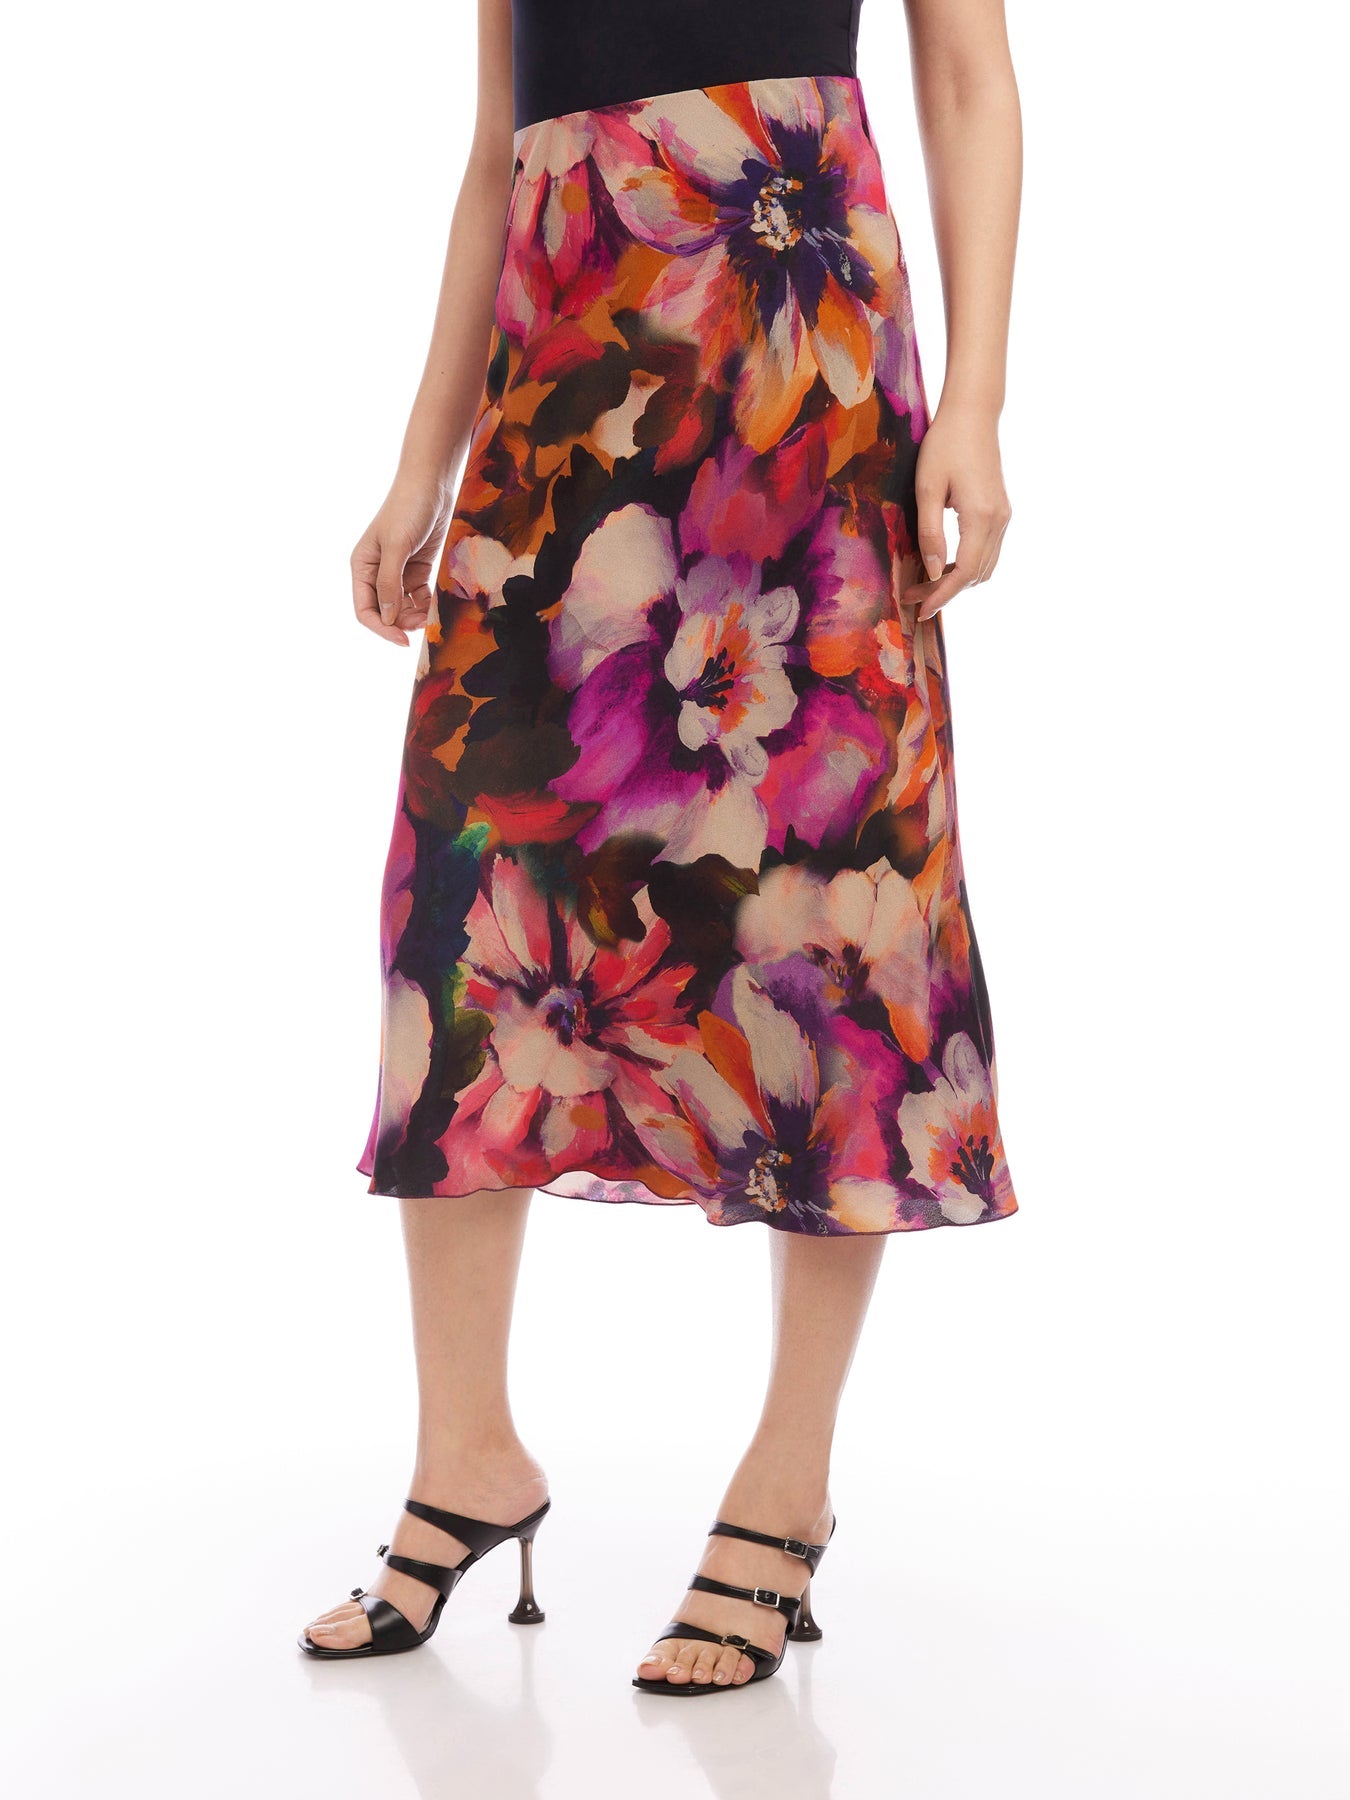 Bias Cut Midi Skirt in Floral Magenta